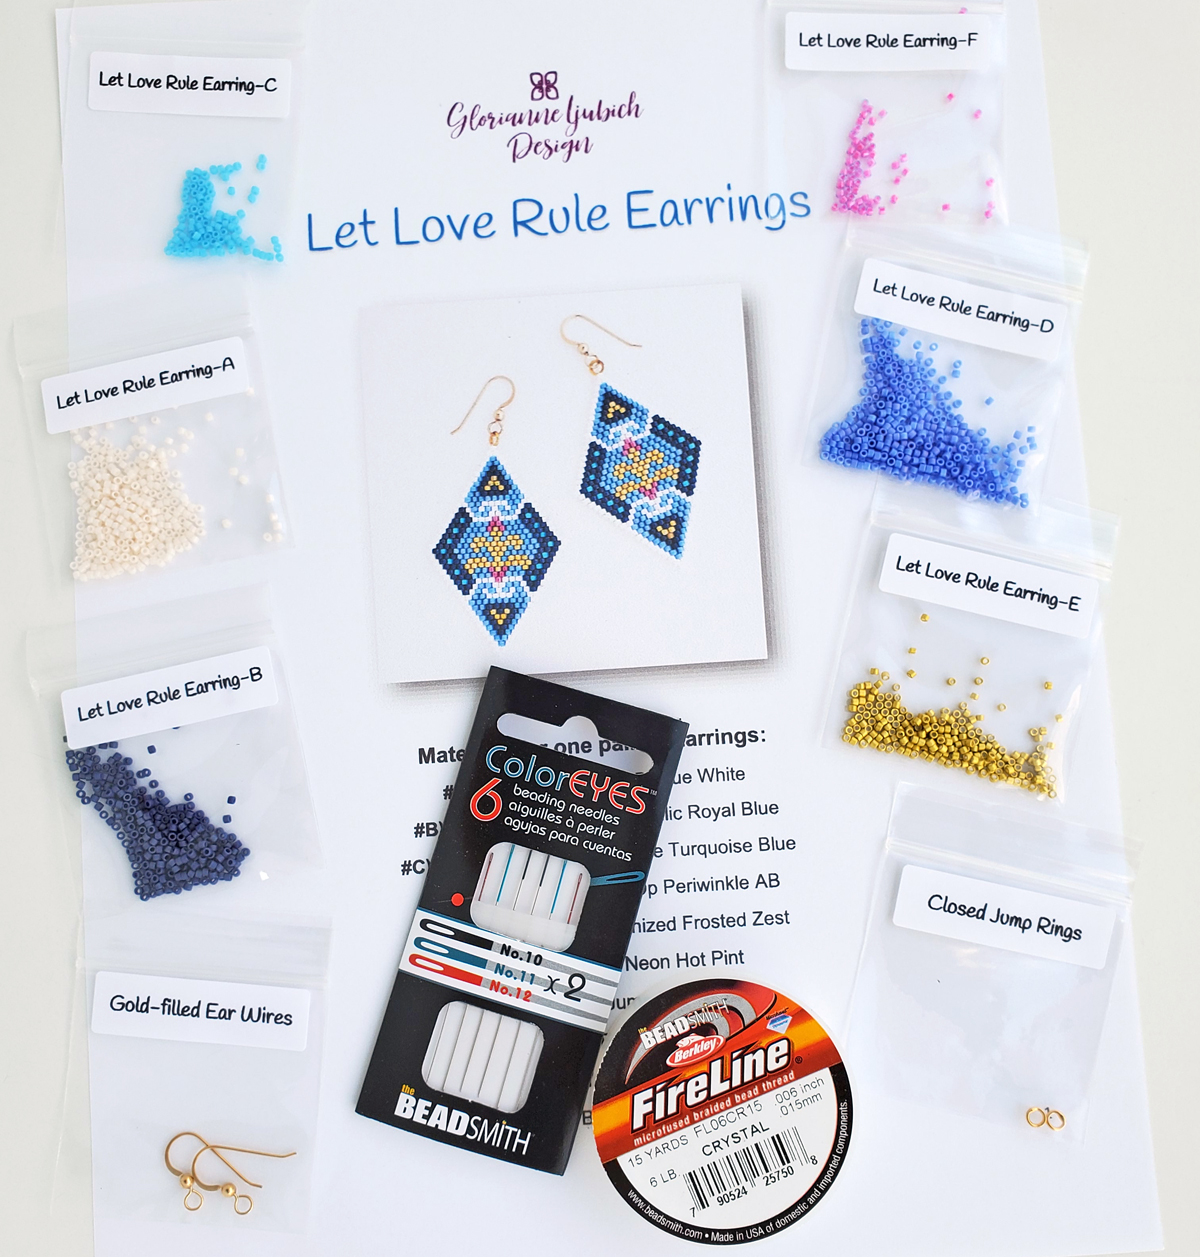 Let Love Rule Earrings Beadwork Kit Supplies